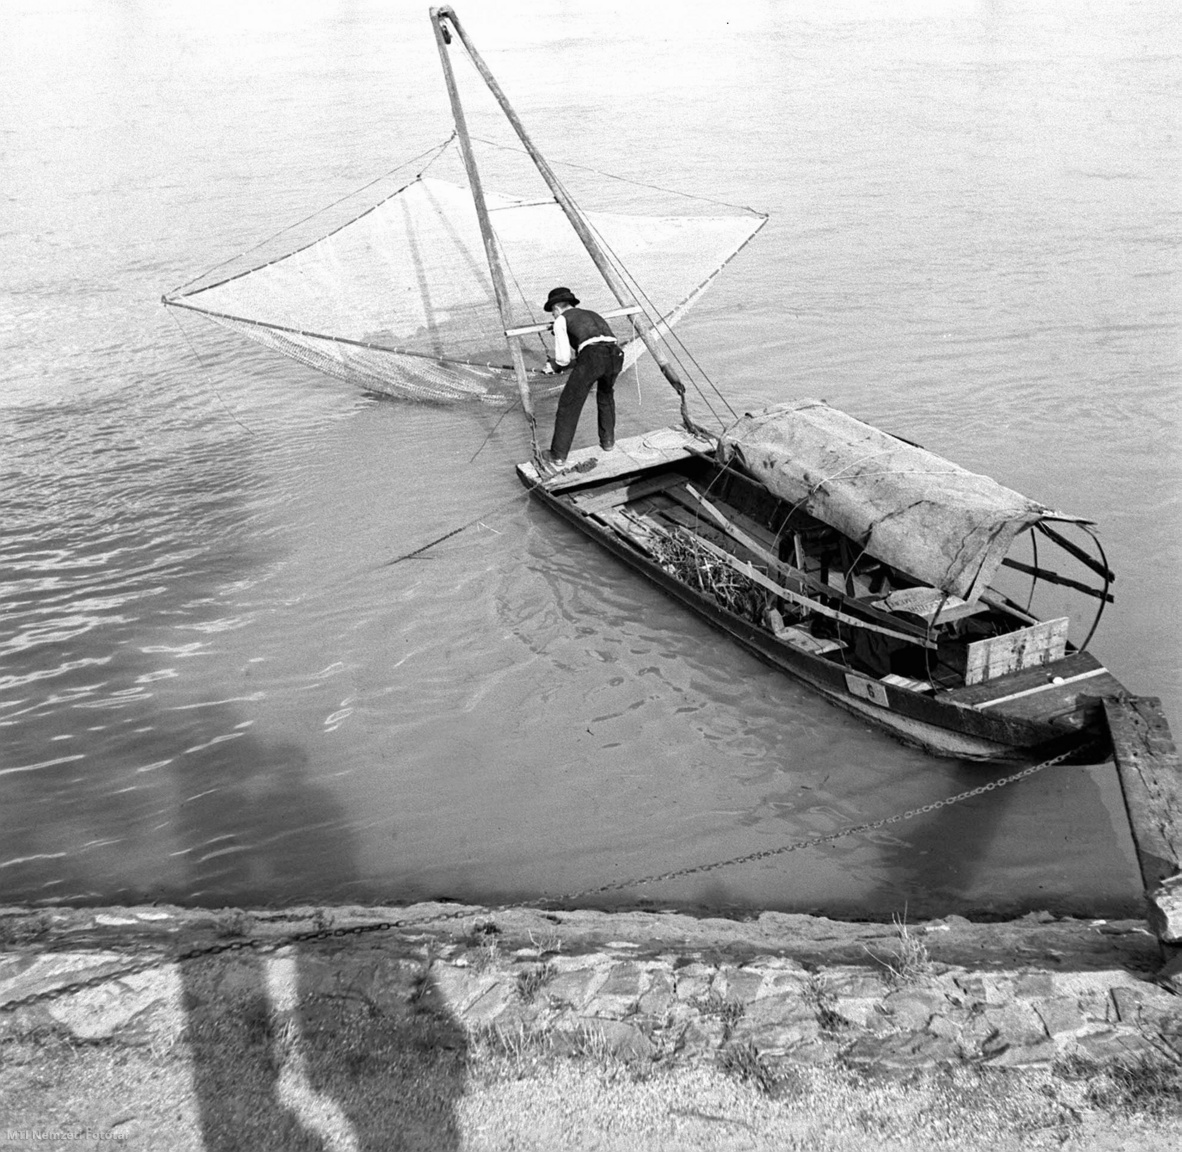 Magyarország, 1930-as évek  Halász a vízbe meríti hálóját. A felvétel készítésének pontos dátuma és helyszíne ismeretlen.